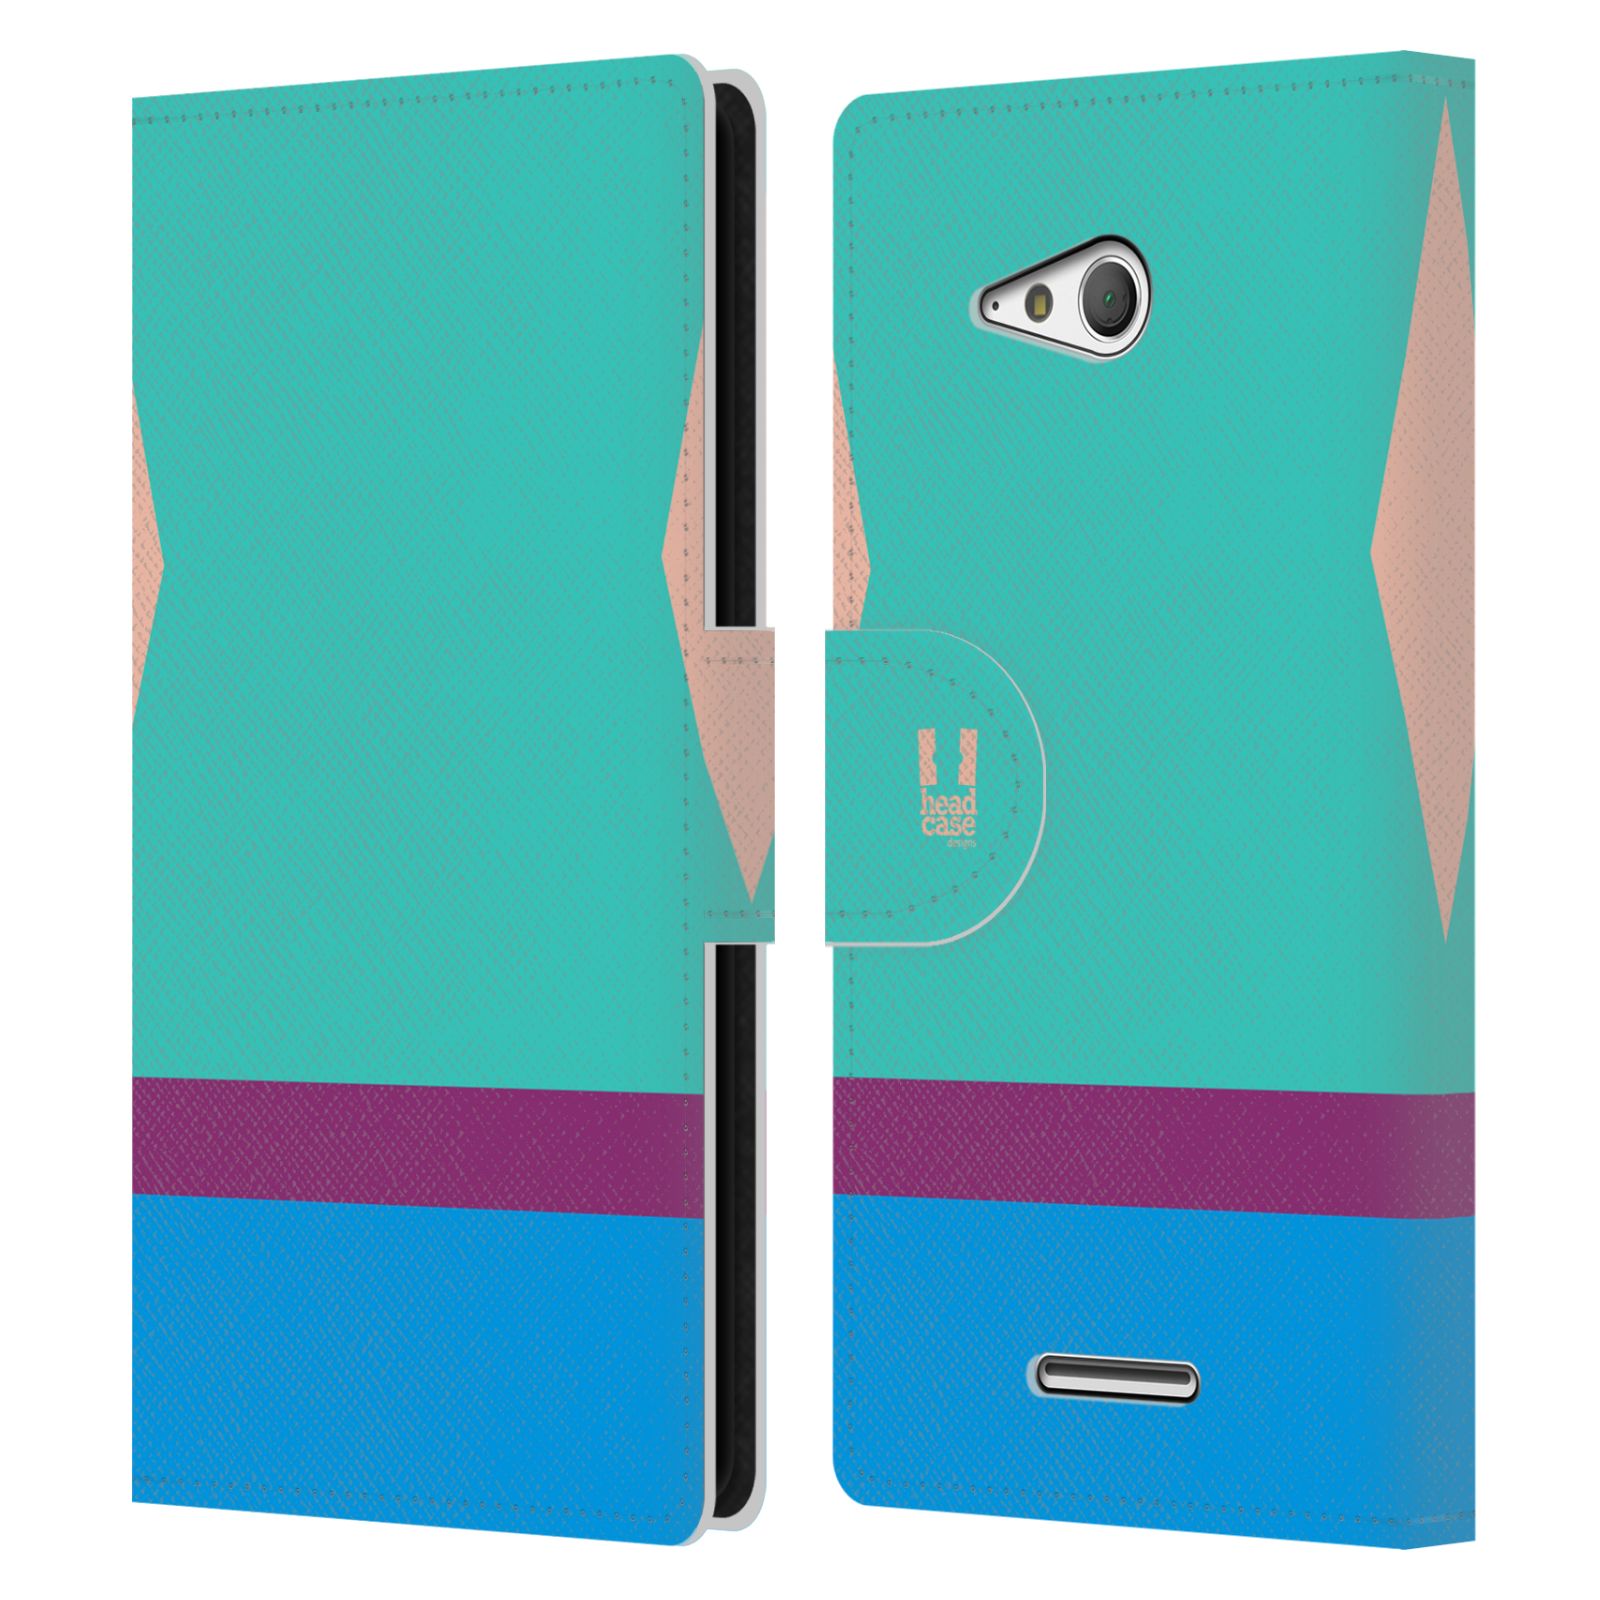 HEAD CASE Flipové pouzdro pro mobil SONY Xperia E4g barevné tvary modrá a fialový pruh